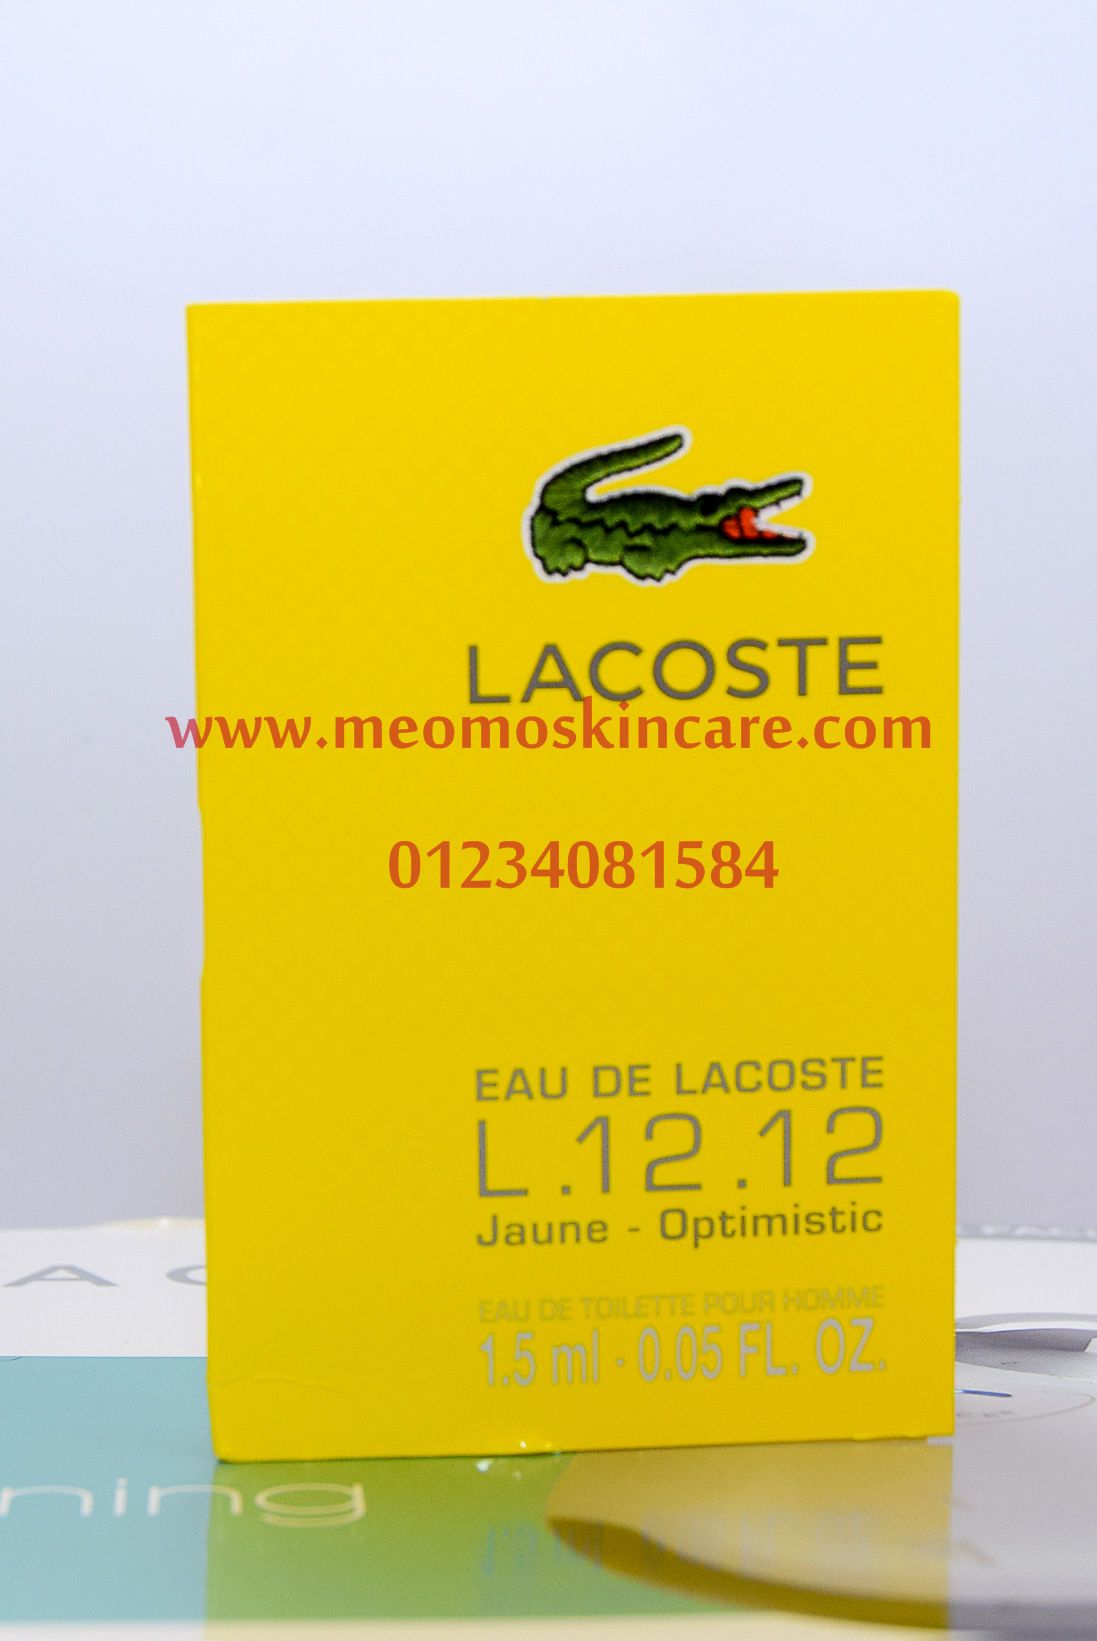 Lacoste - Jaune Optimisic - L.12.12 - 1.5ml